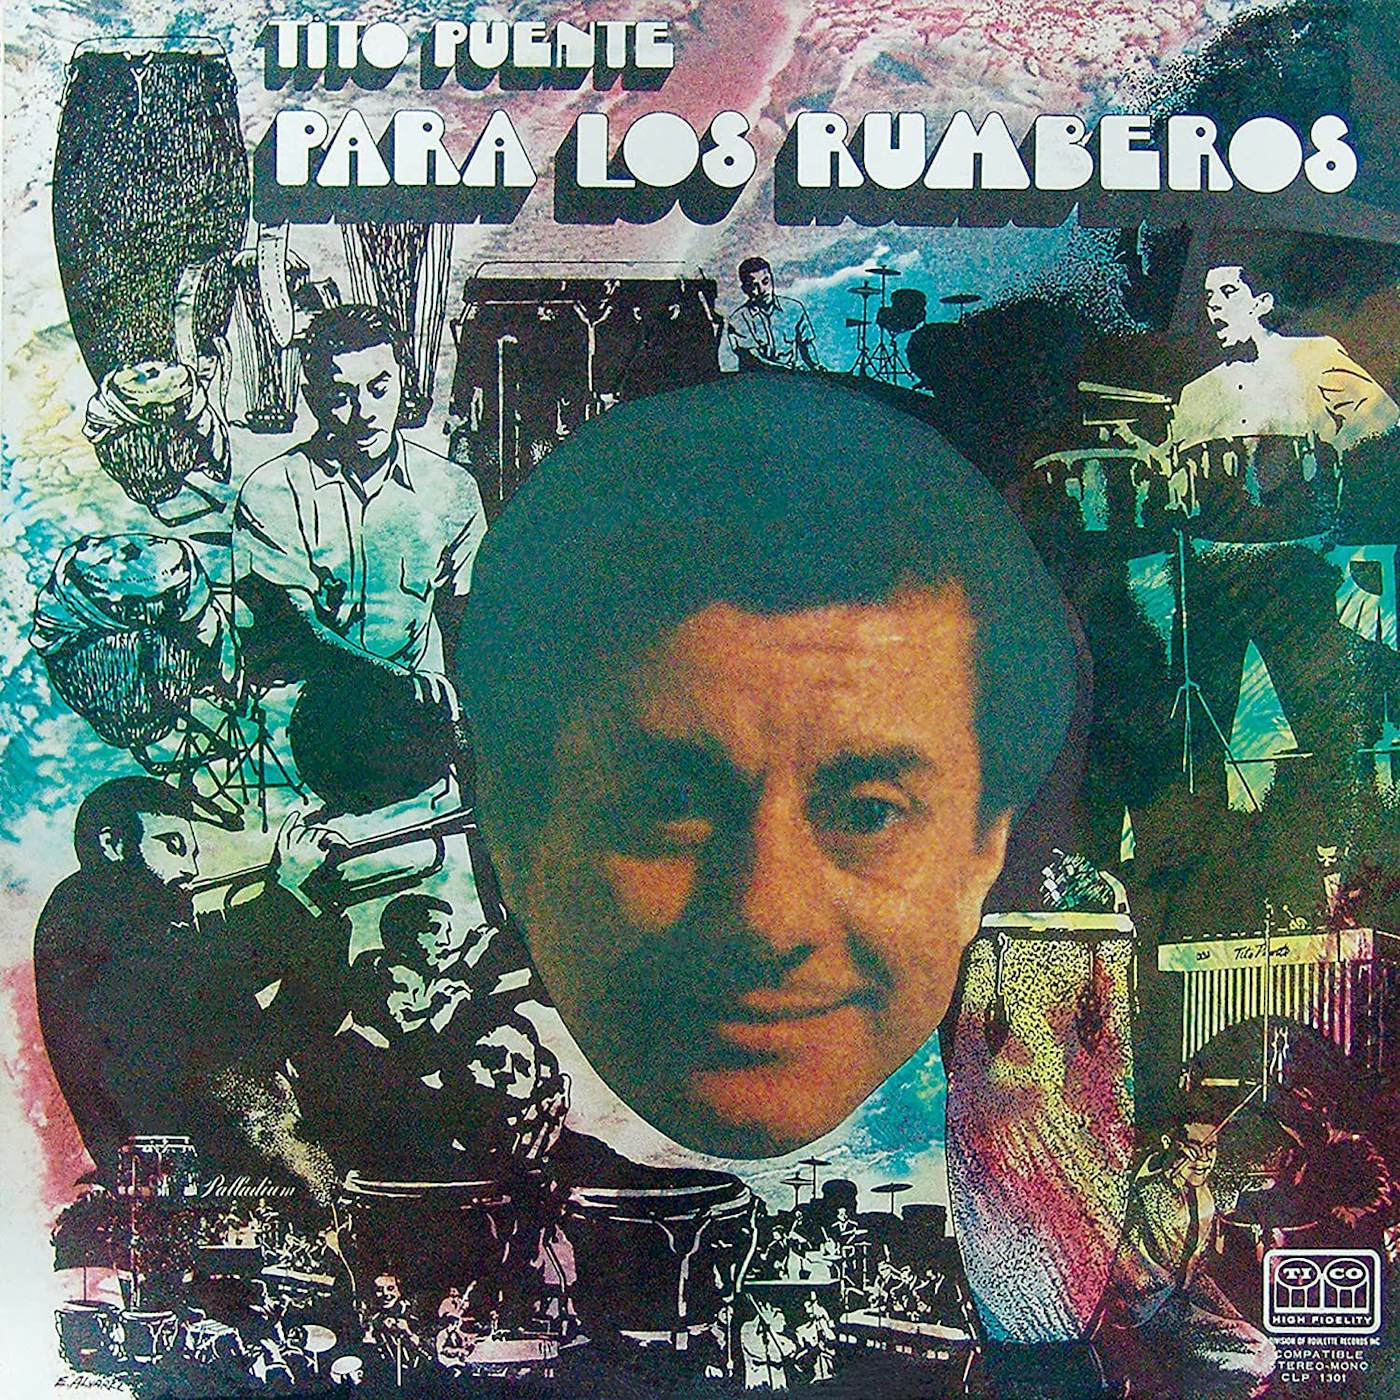 Tito Puente Para Los Rumberos Vinyl Record